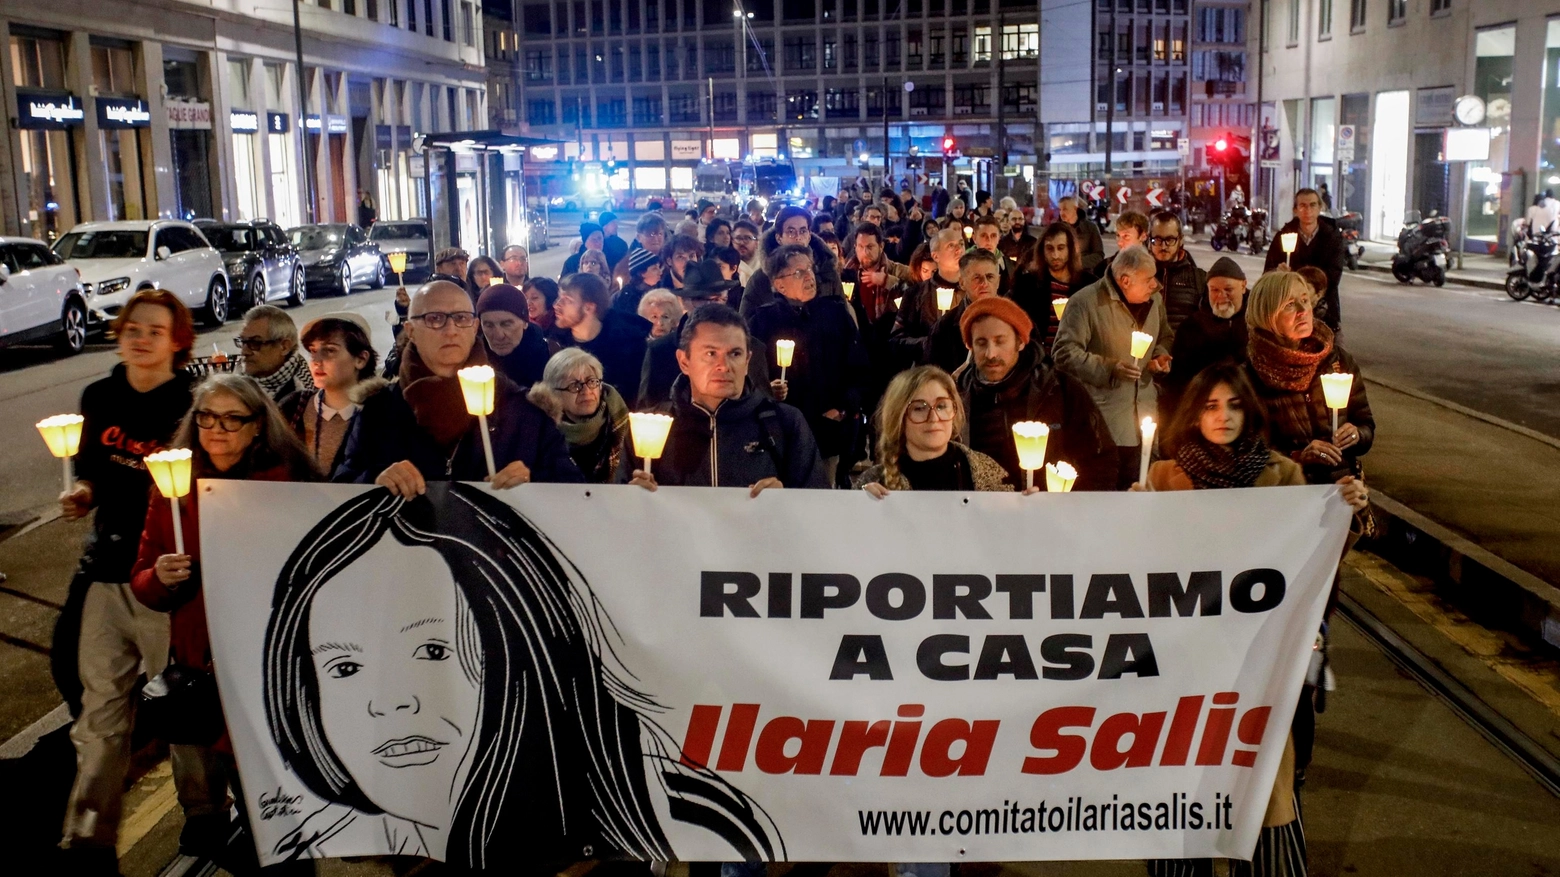 A supporto dell’insegnante di Monza, detenuta a Budapest, un corteo ha sfilato a Milano. Ma vicino all’ambasciata sono comparsi insulti alla donna e inni al fascismo